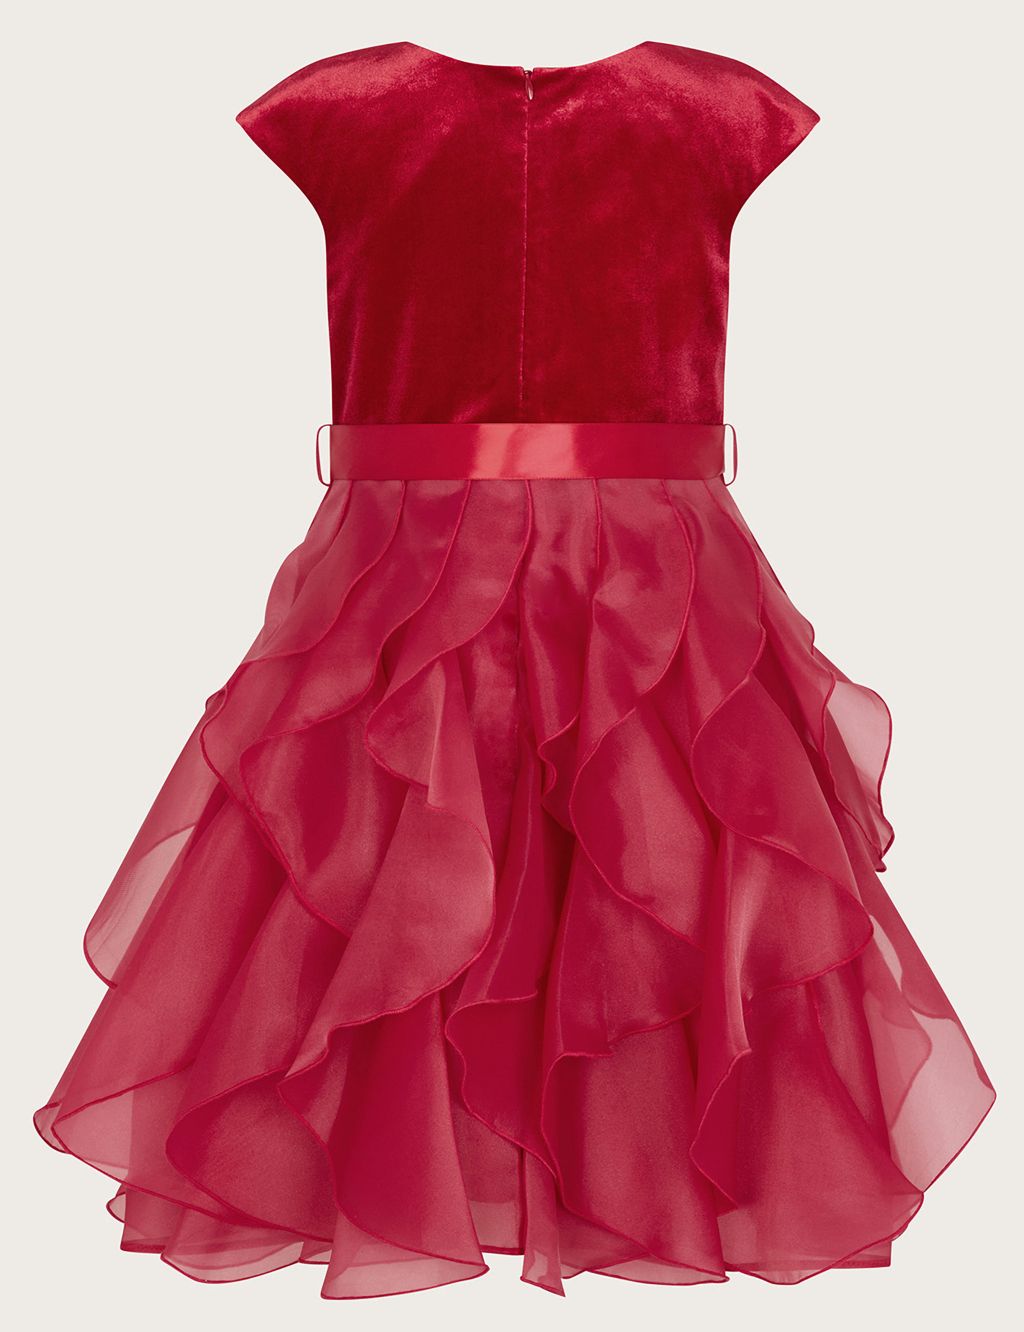 Velvet Tulle Occasion Dress (3-15 Yrs) image 2